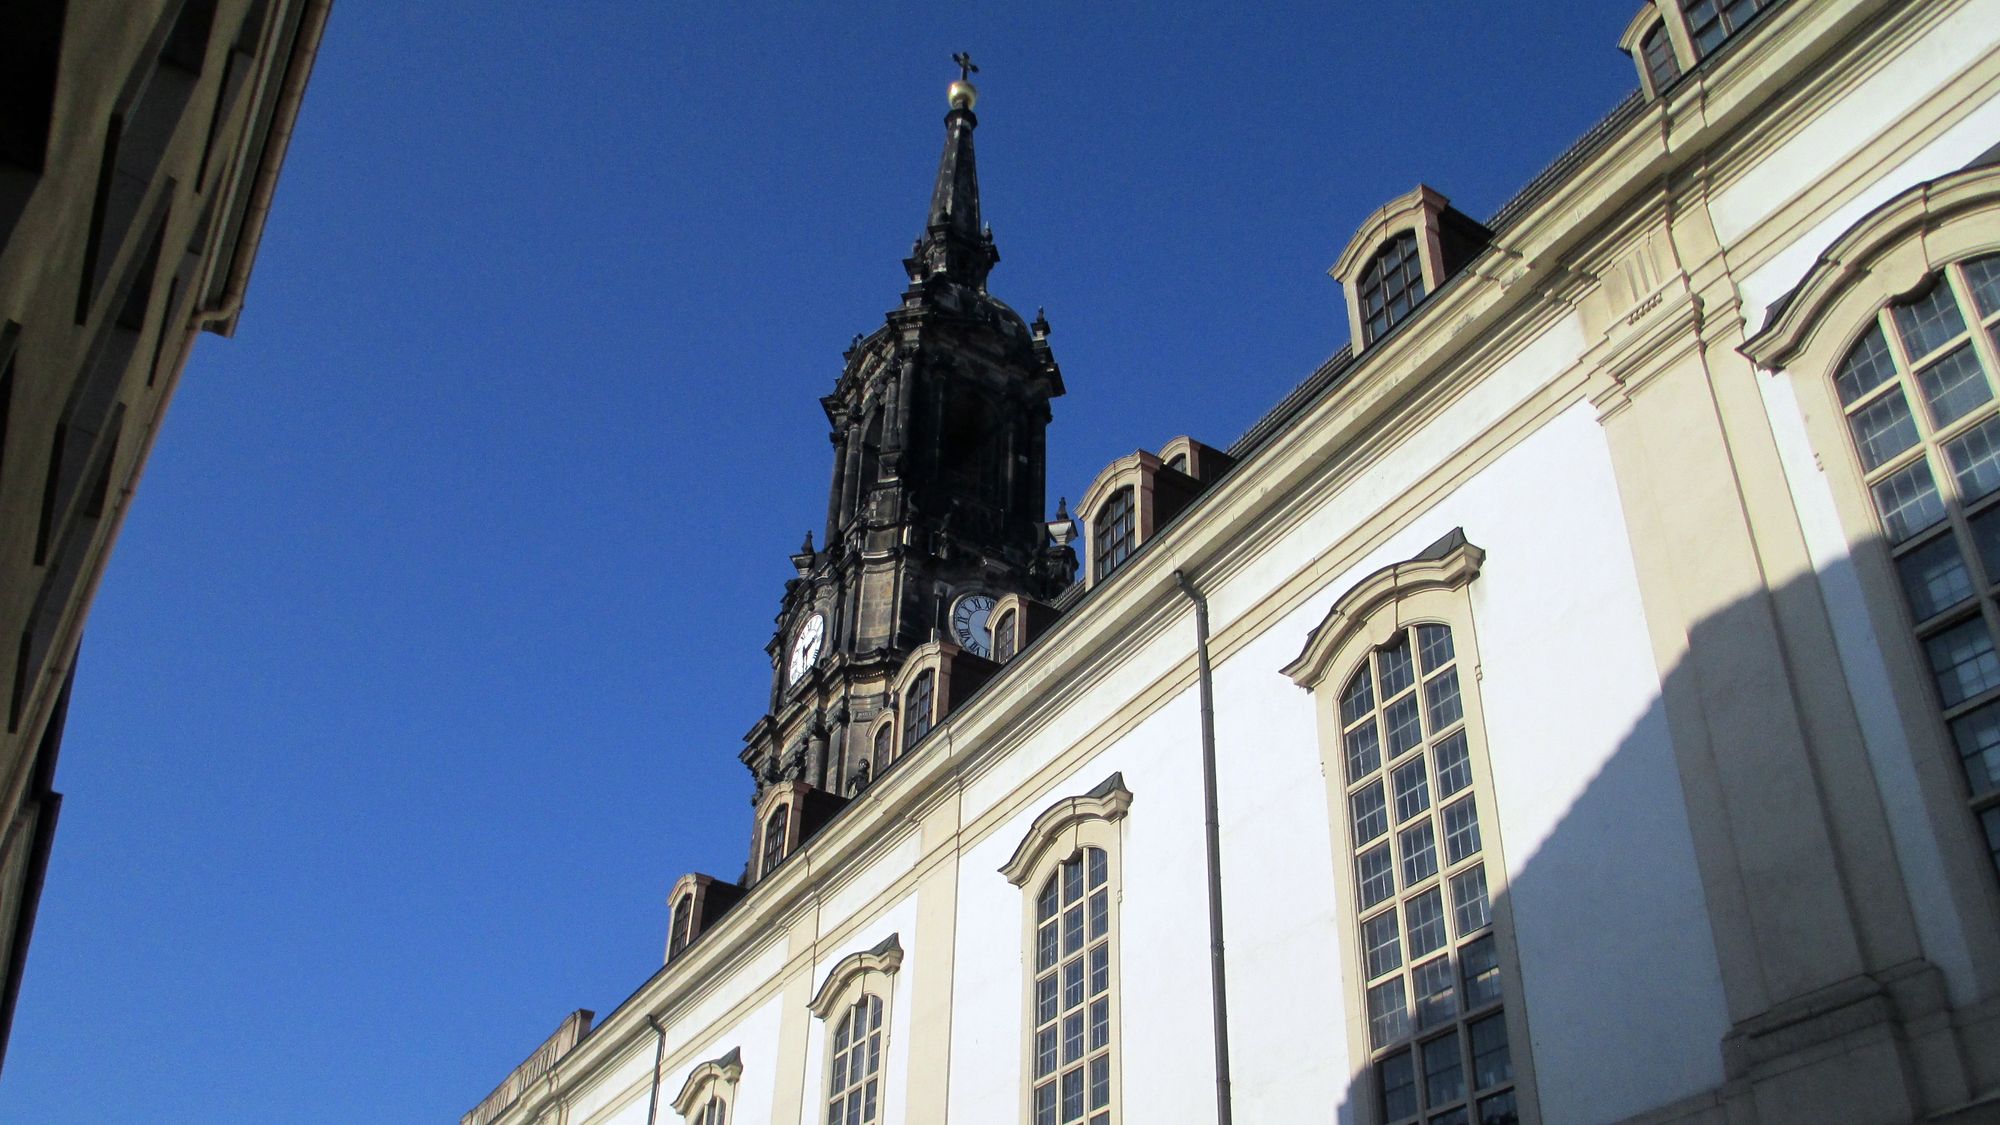 In der Dreikönisgkirche befindet sich das berühmte Steinrelief "Dresdner Totentanz" - Namensgeber u.a. für das Tanzstück von DEREVO